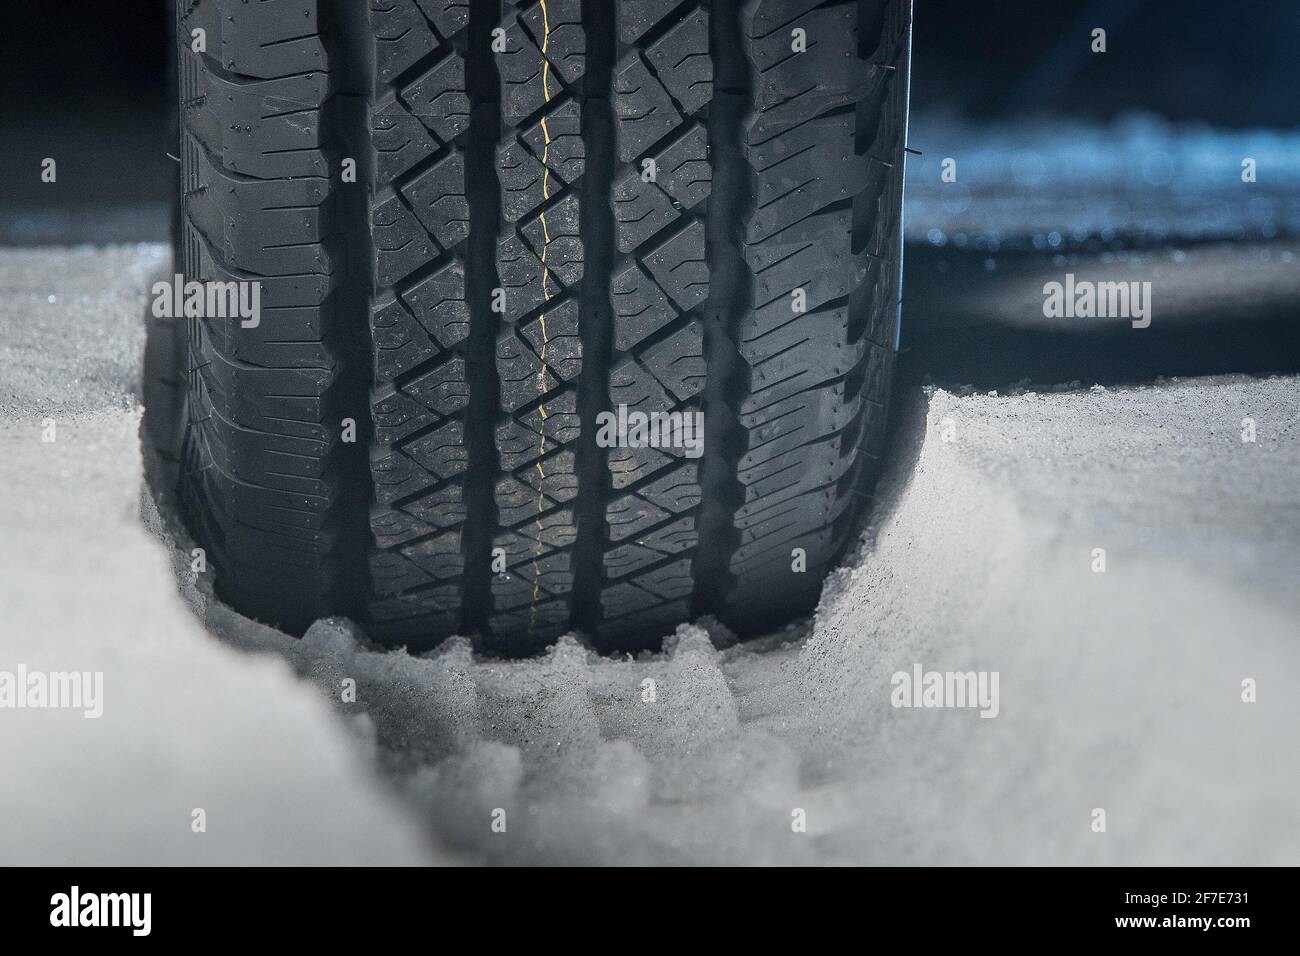 Pneu tout-terrain dans la neige. Piste de neige visible dans la neige avec  un pneu de voiture ou de vus en caoutchouc à l'avant. Marques de bande de  roulement dans la neige.